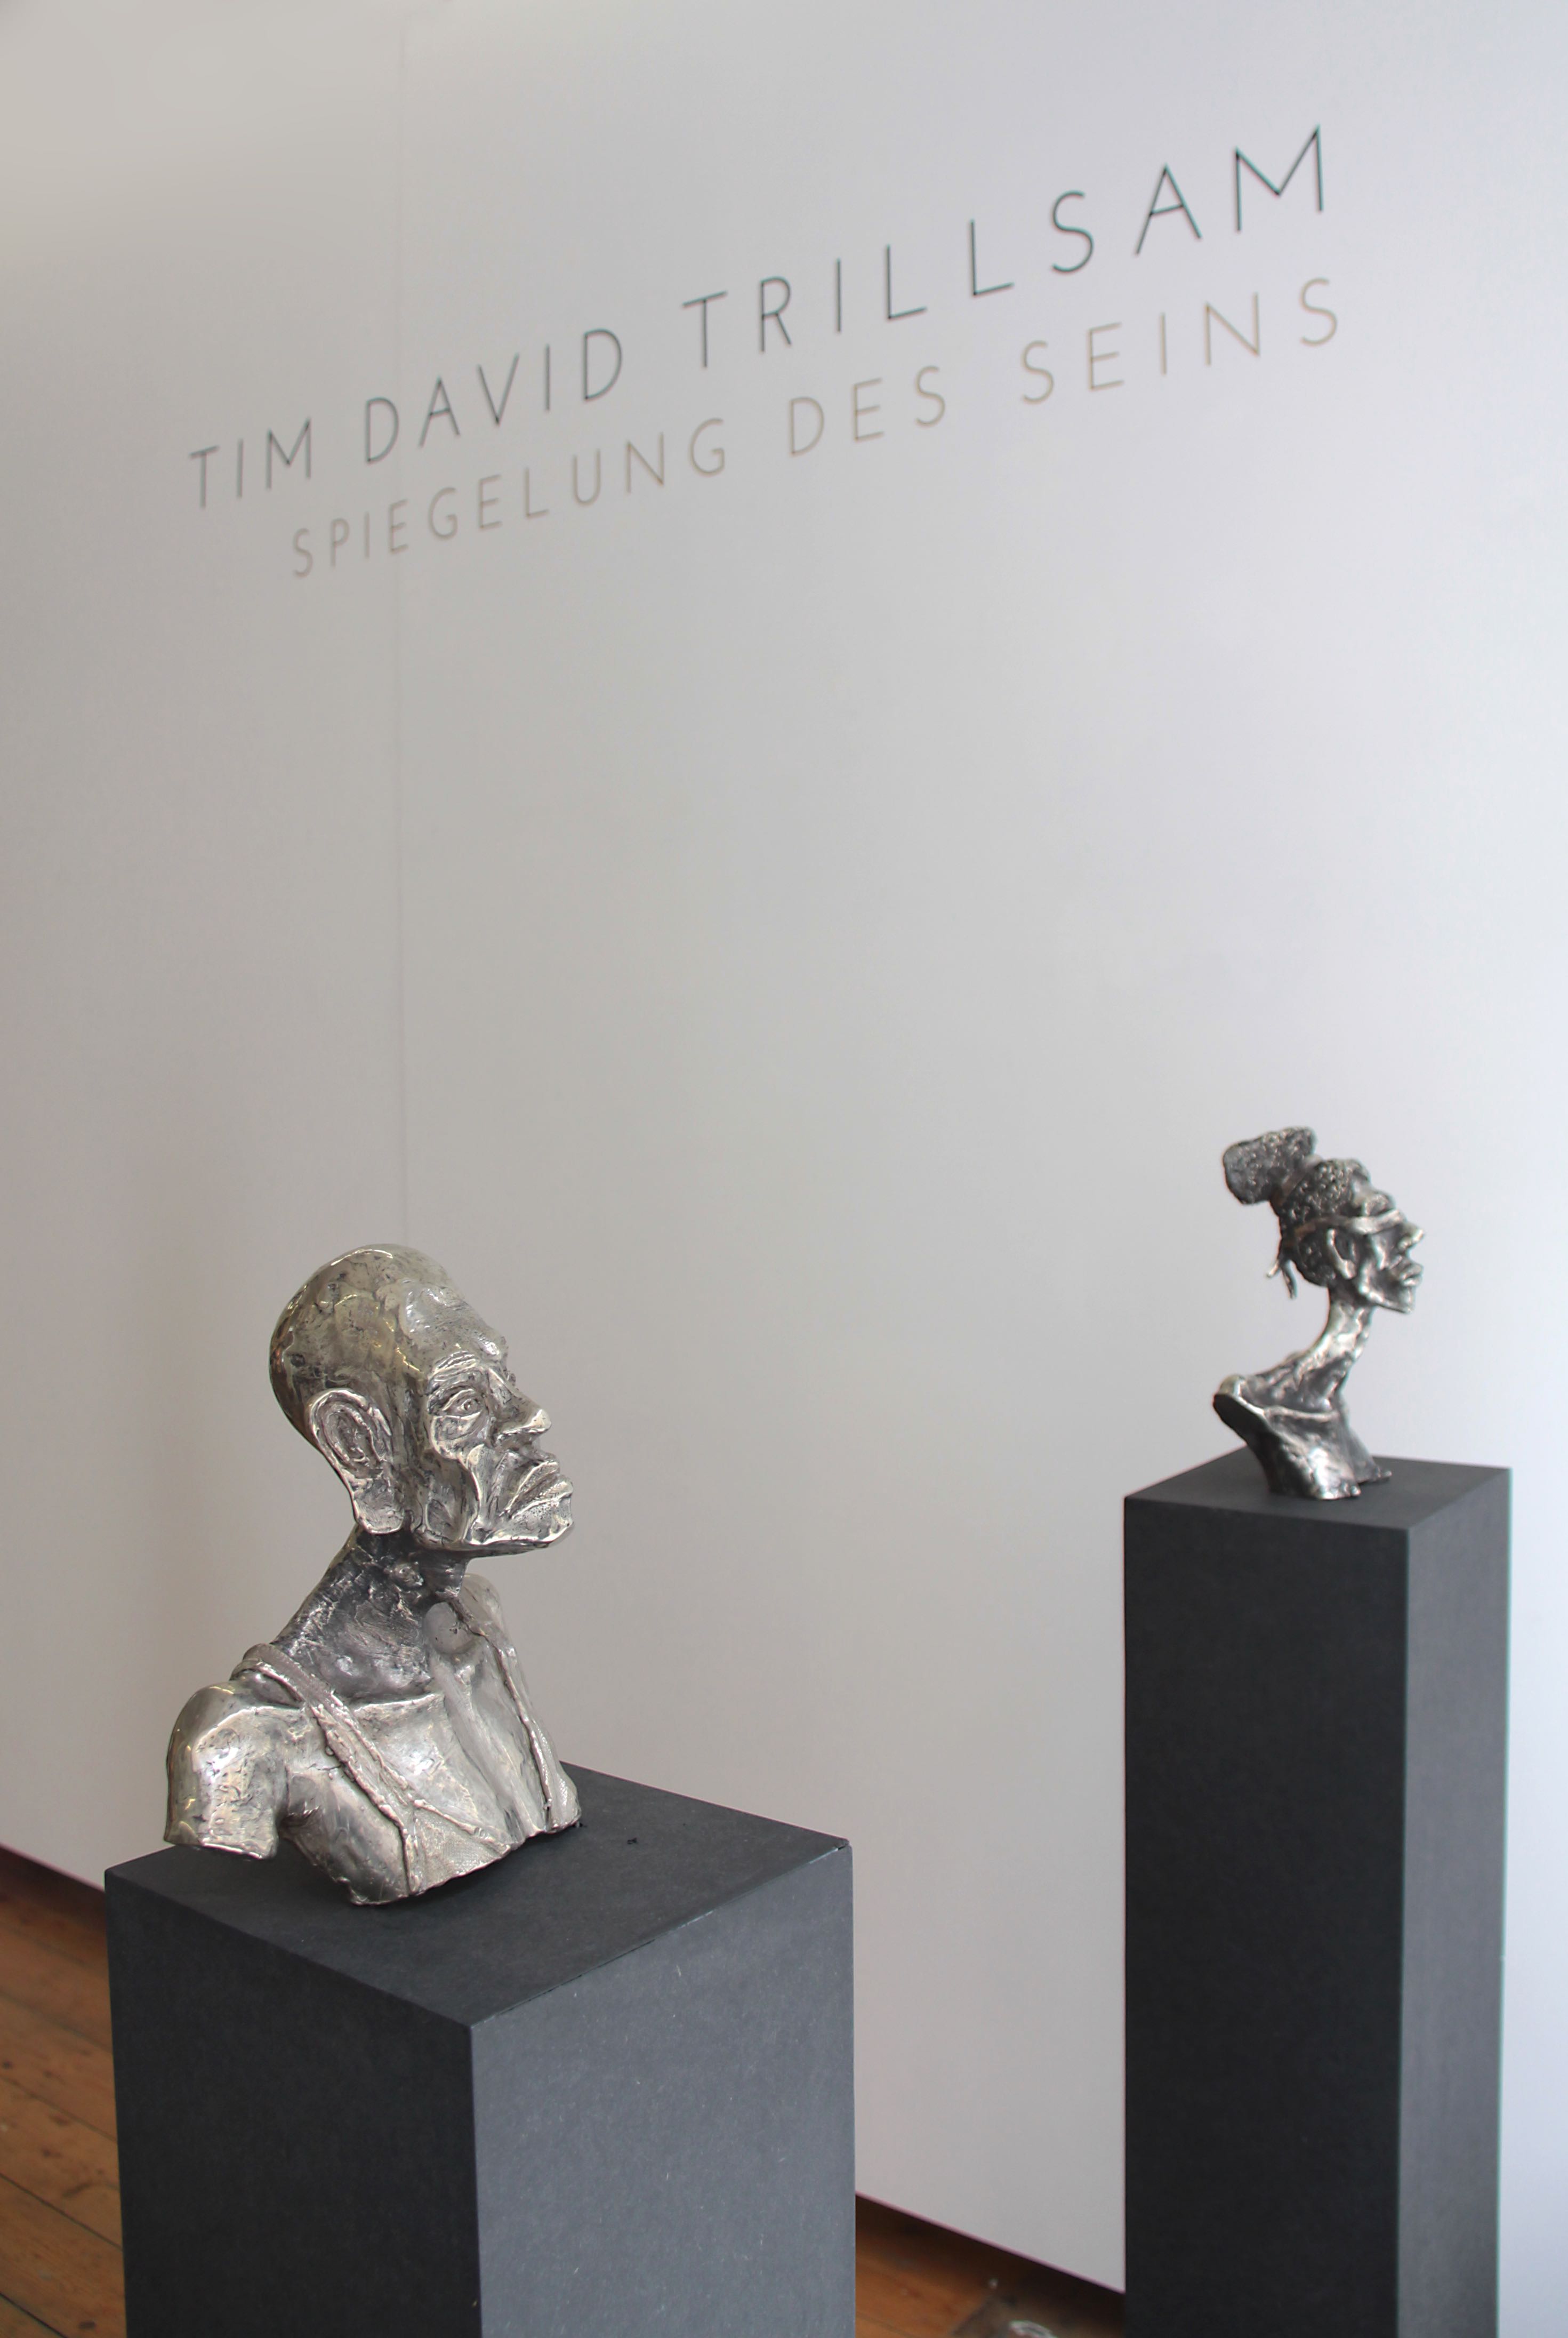 Die Spiegelung des Seins II, bis 26. April 2015 bei MuniqueART, Skulpturen von Tim David Trillsam